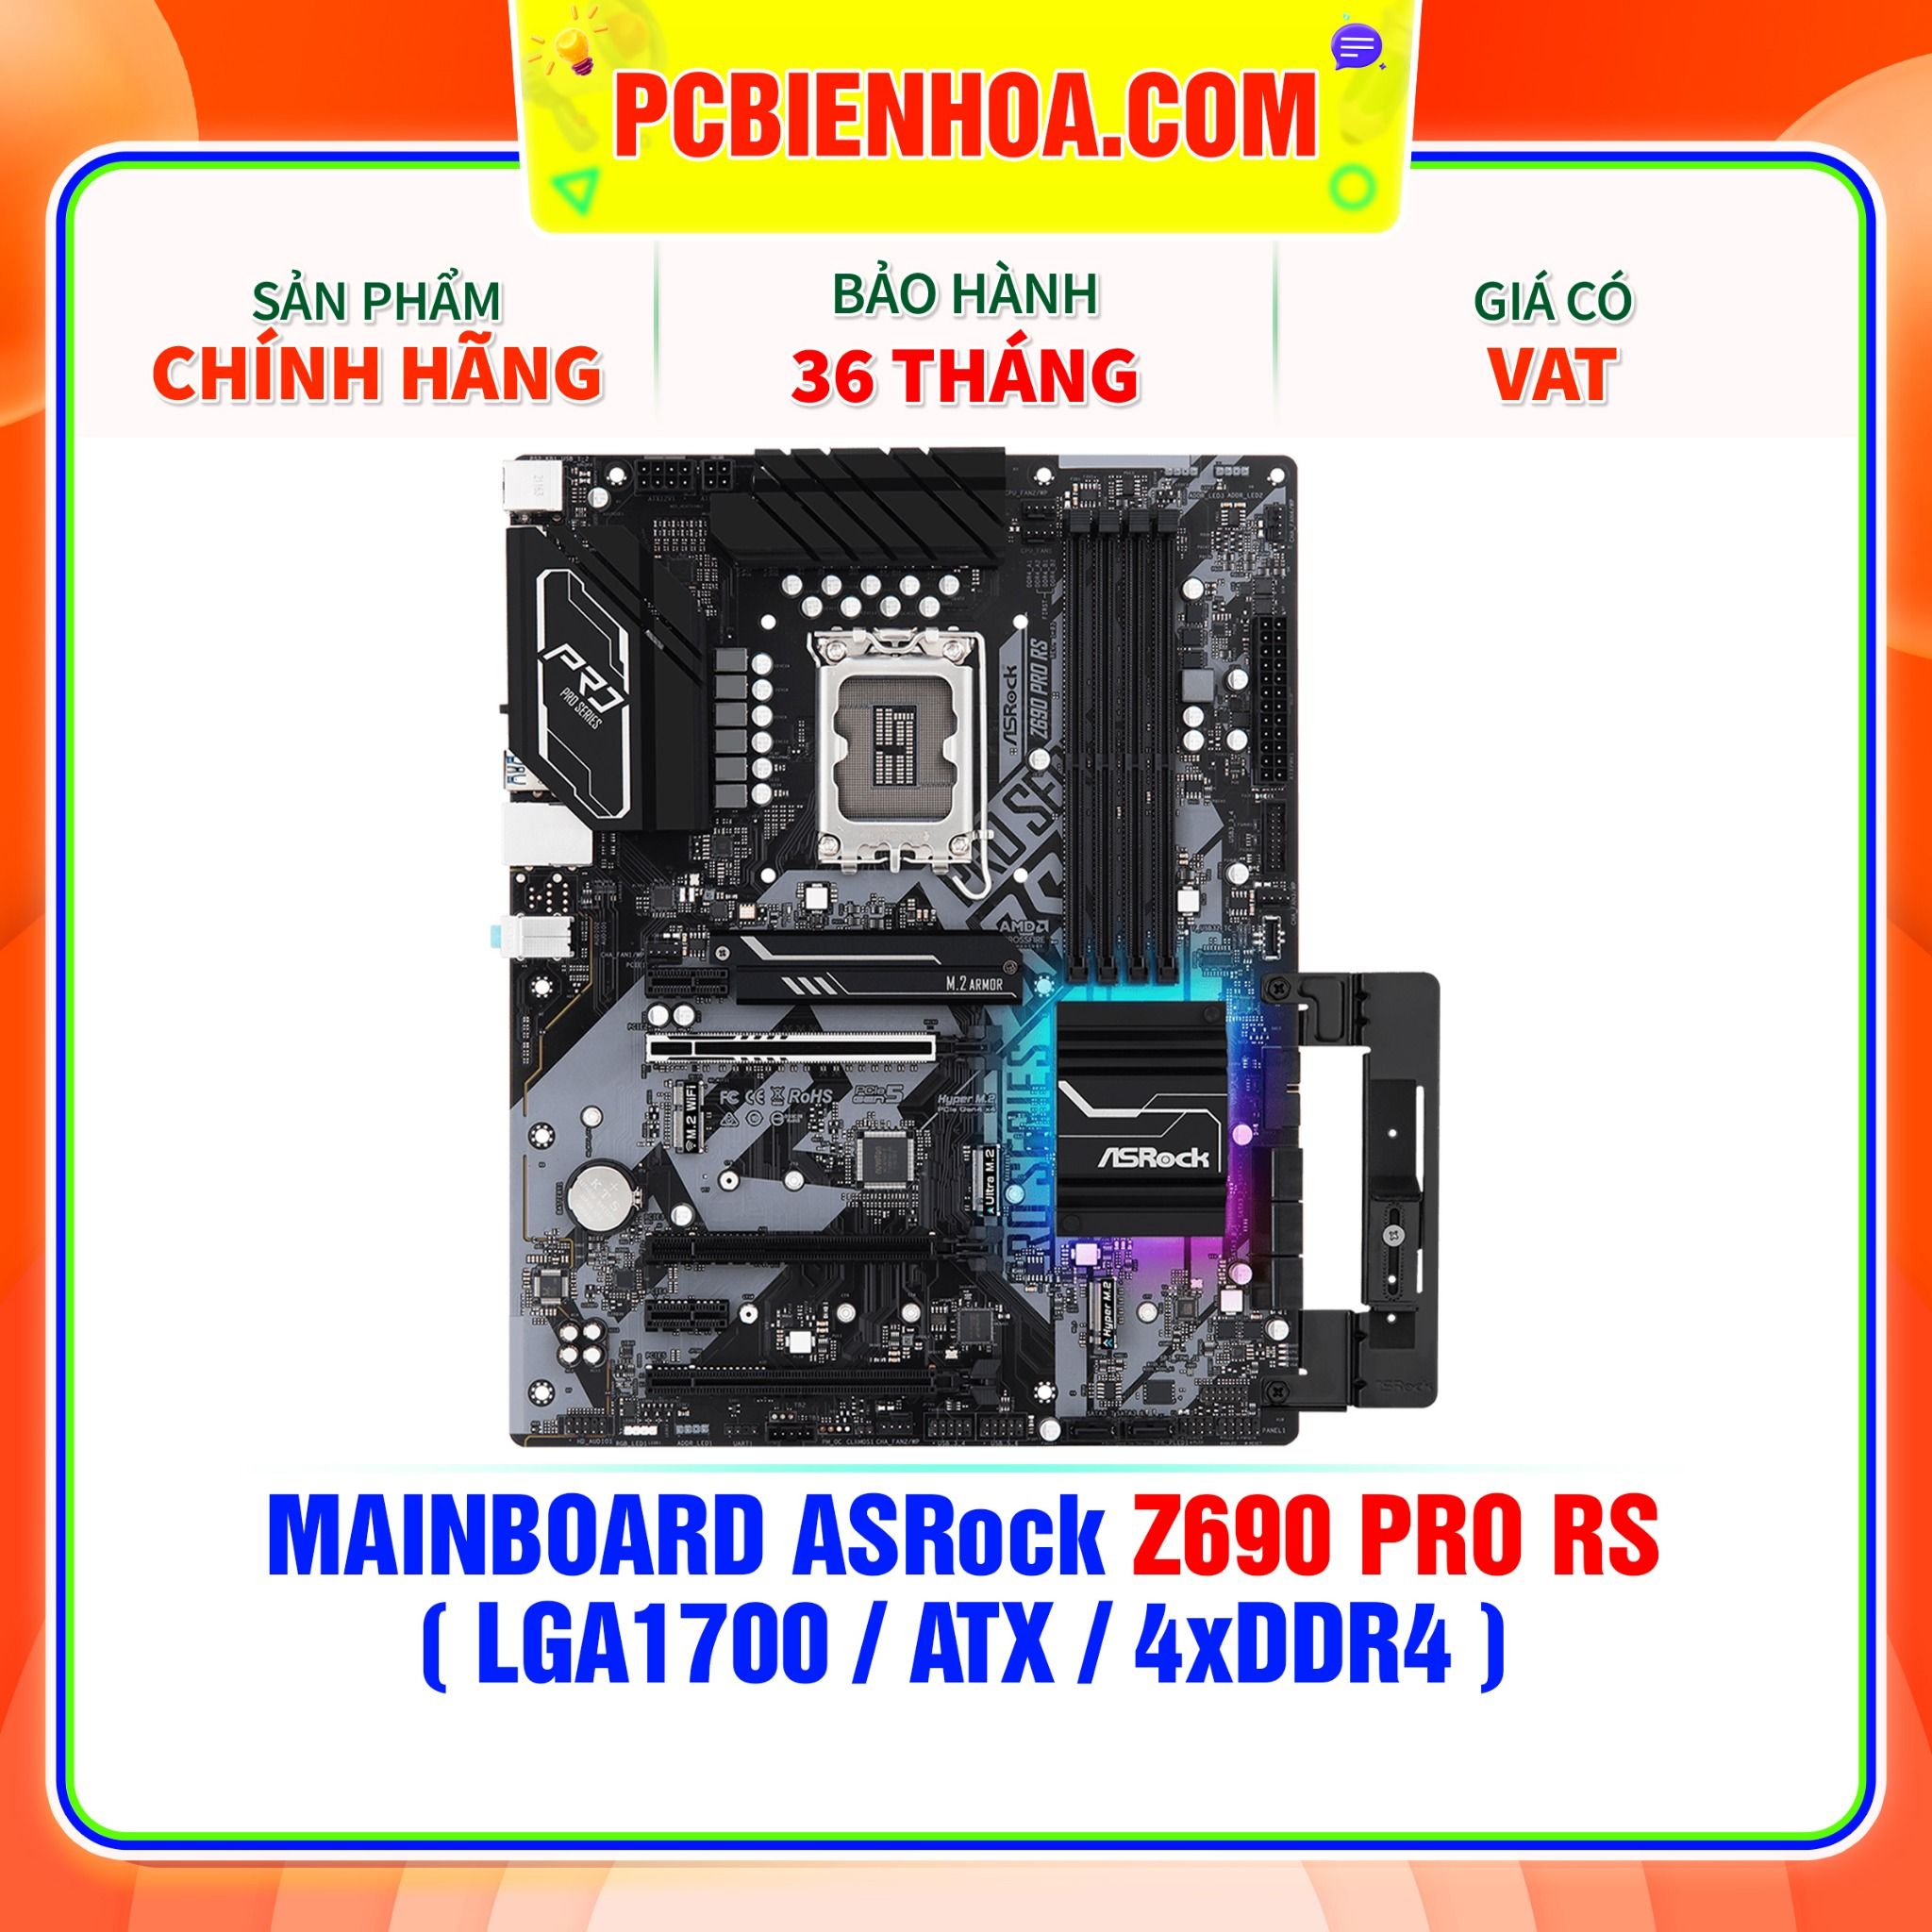  MAINBOARD ASRock Z690 Pro RS ( LGA1700 / ATX / 4xDDR4 ) 